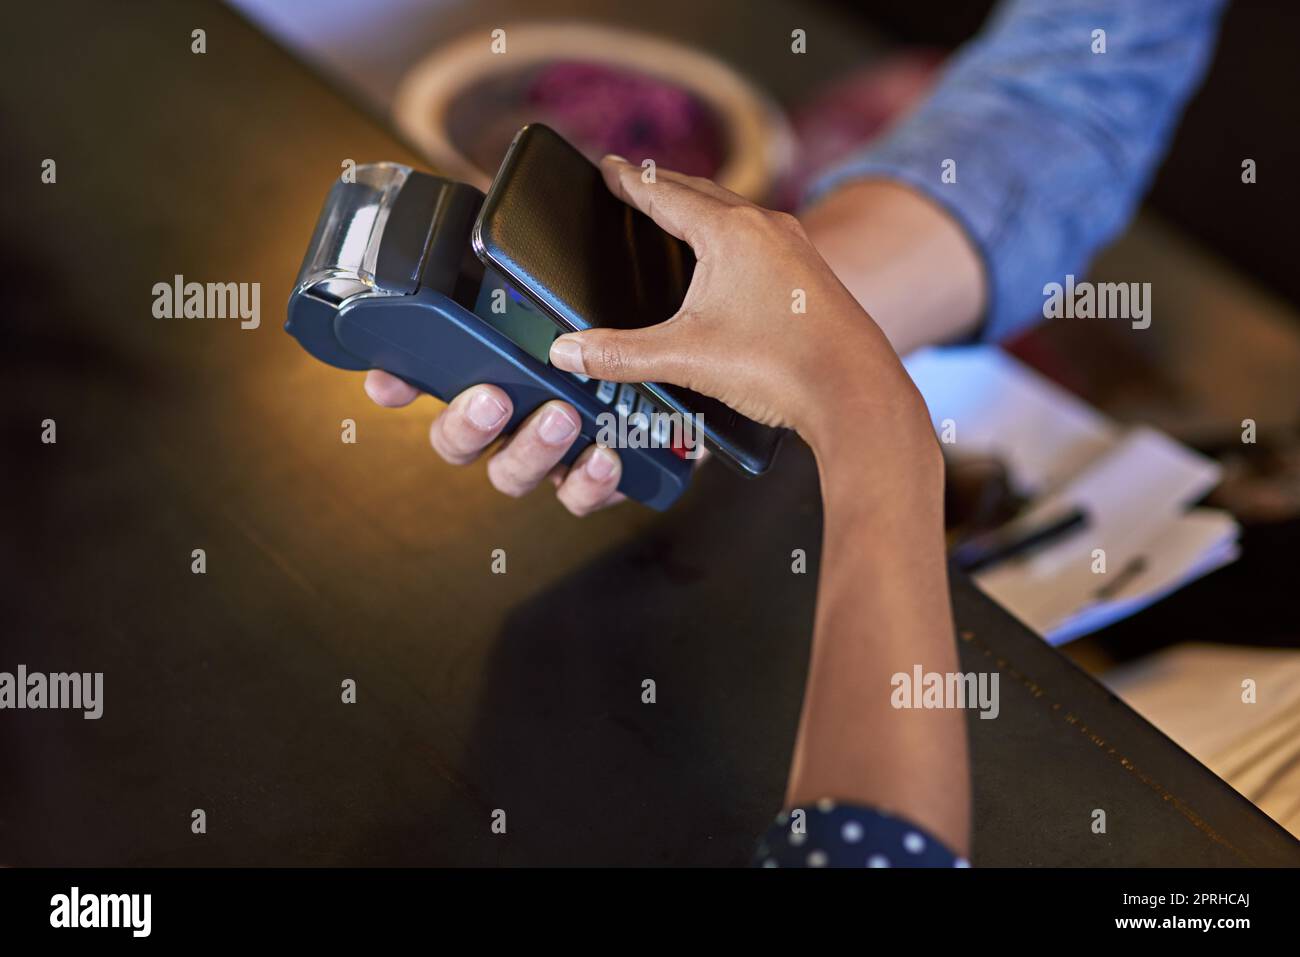 Vereinfachung der Ausgaben. Eine Frau, die in einem Café mit NFC-Technologie bezahlt. Stockfoto